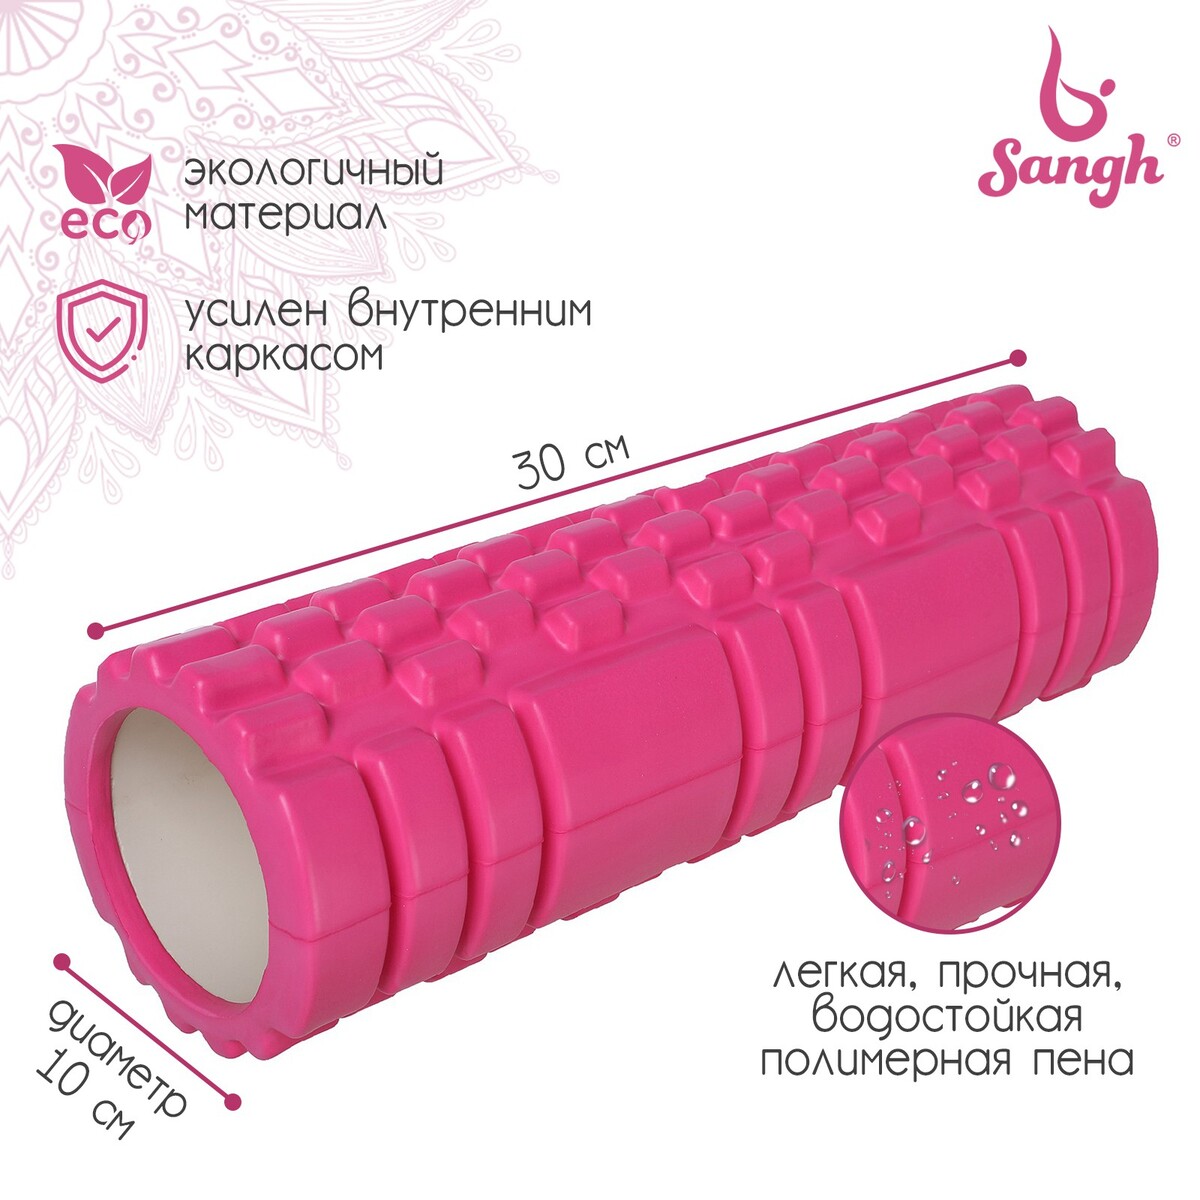 Ролик массажный sangh, 30х10 см, цвет розовый ролик массажный средняя жесткость pro 32 5x12 5 cм star fit fa 507 мятный серый